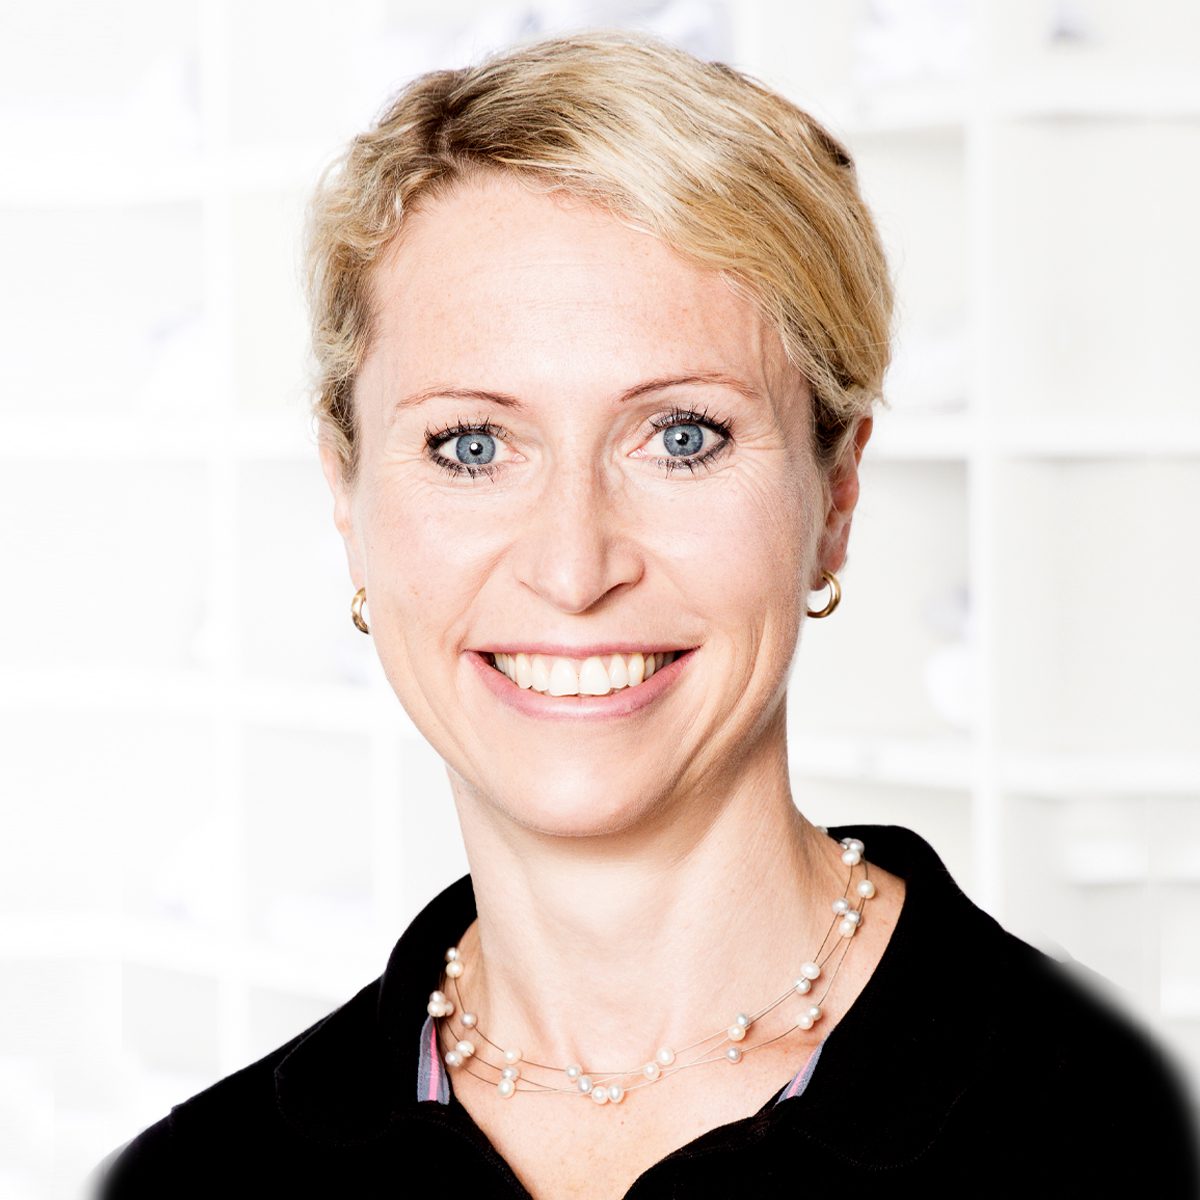 Prof. Dr. med. Anja Hirschmüller